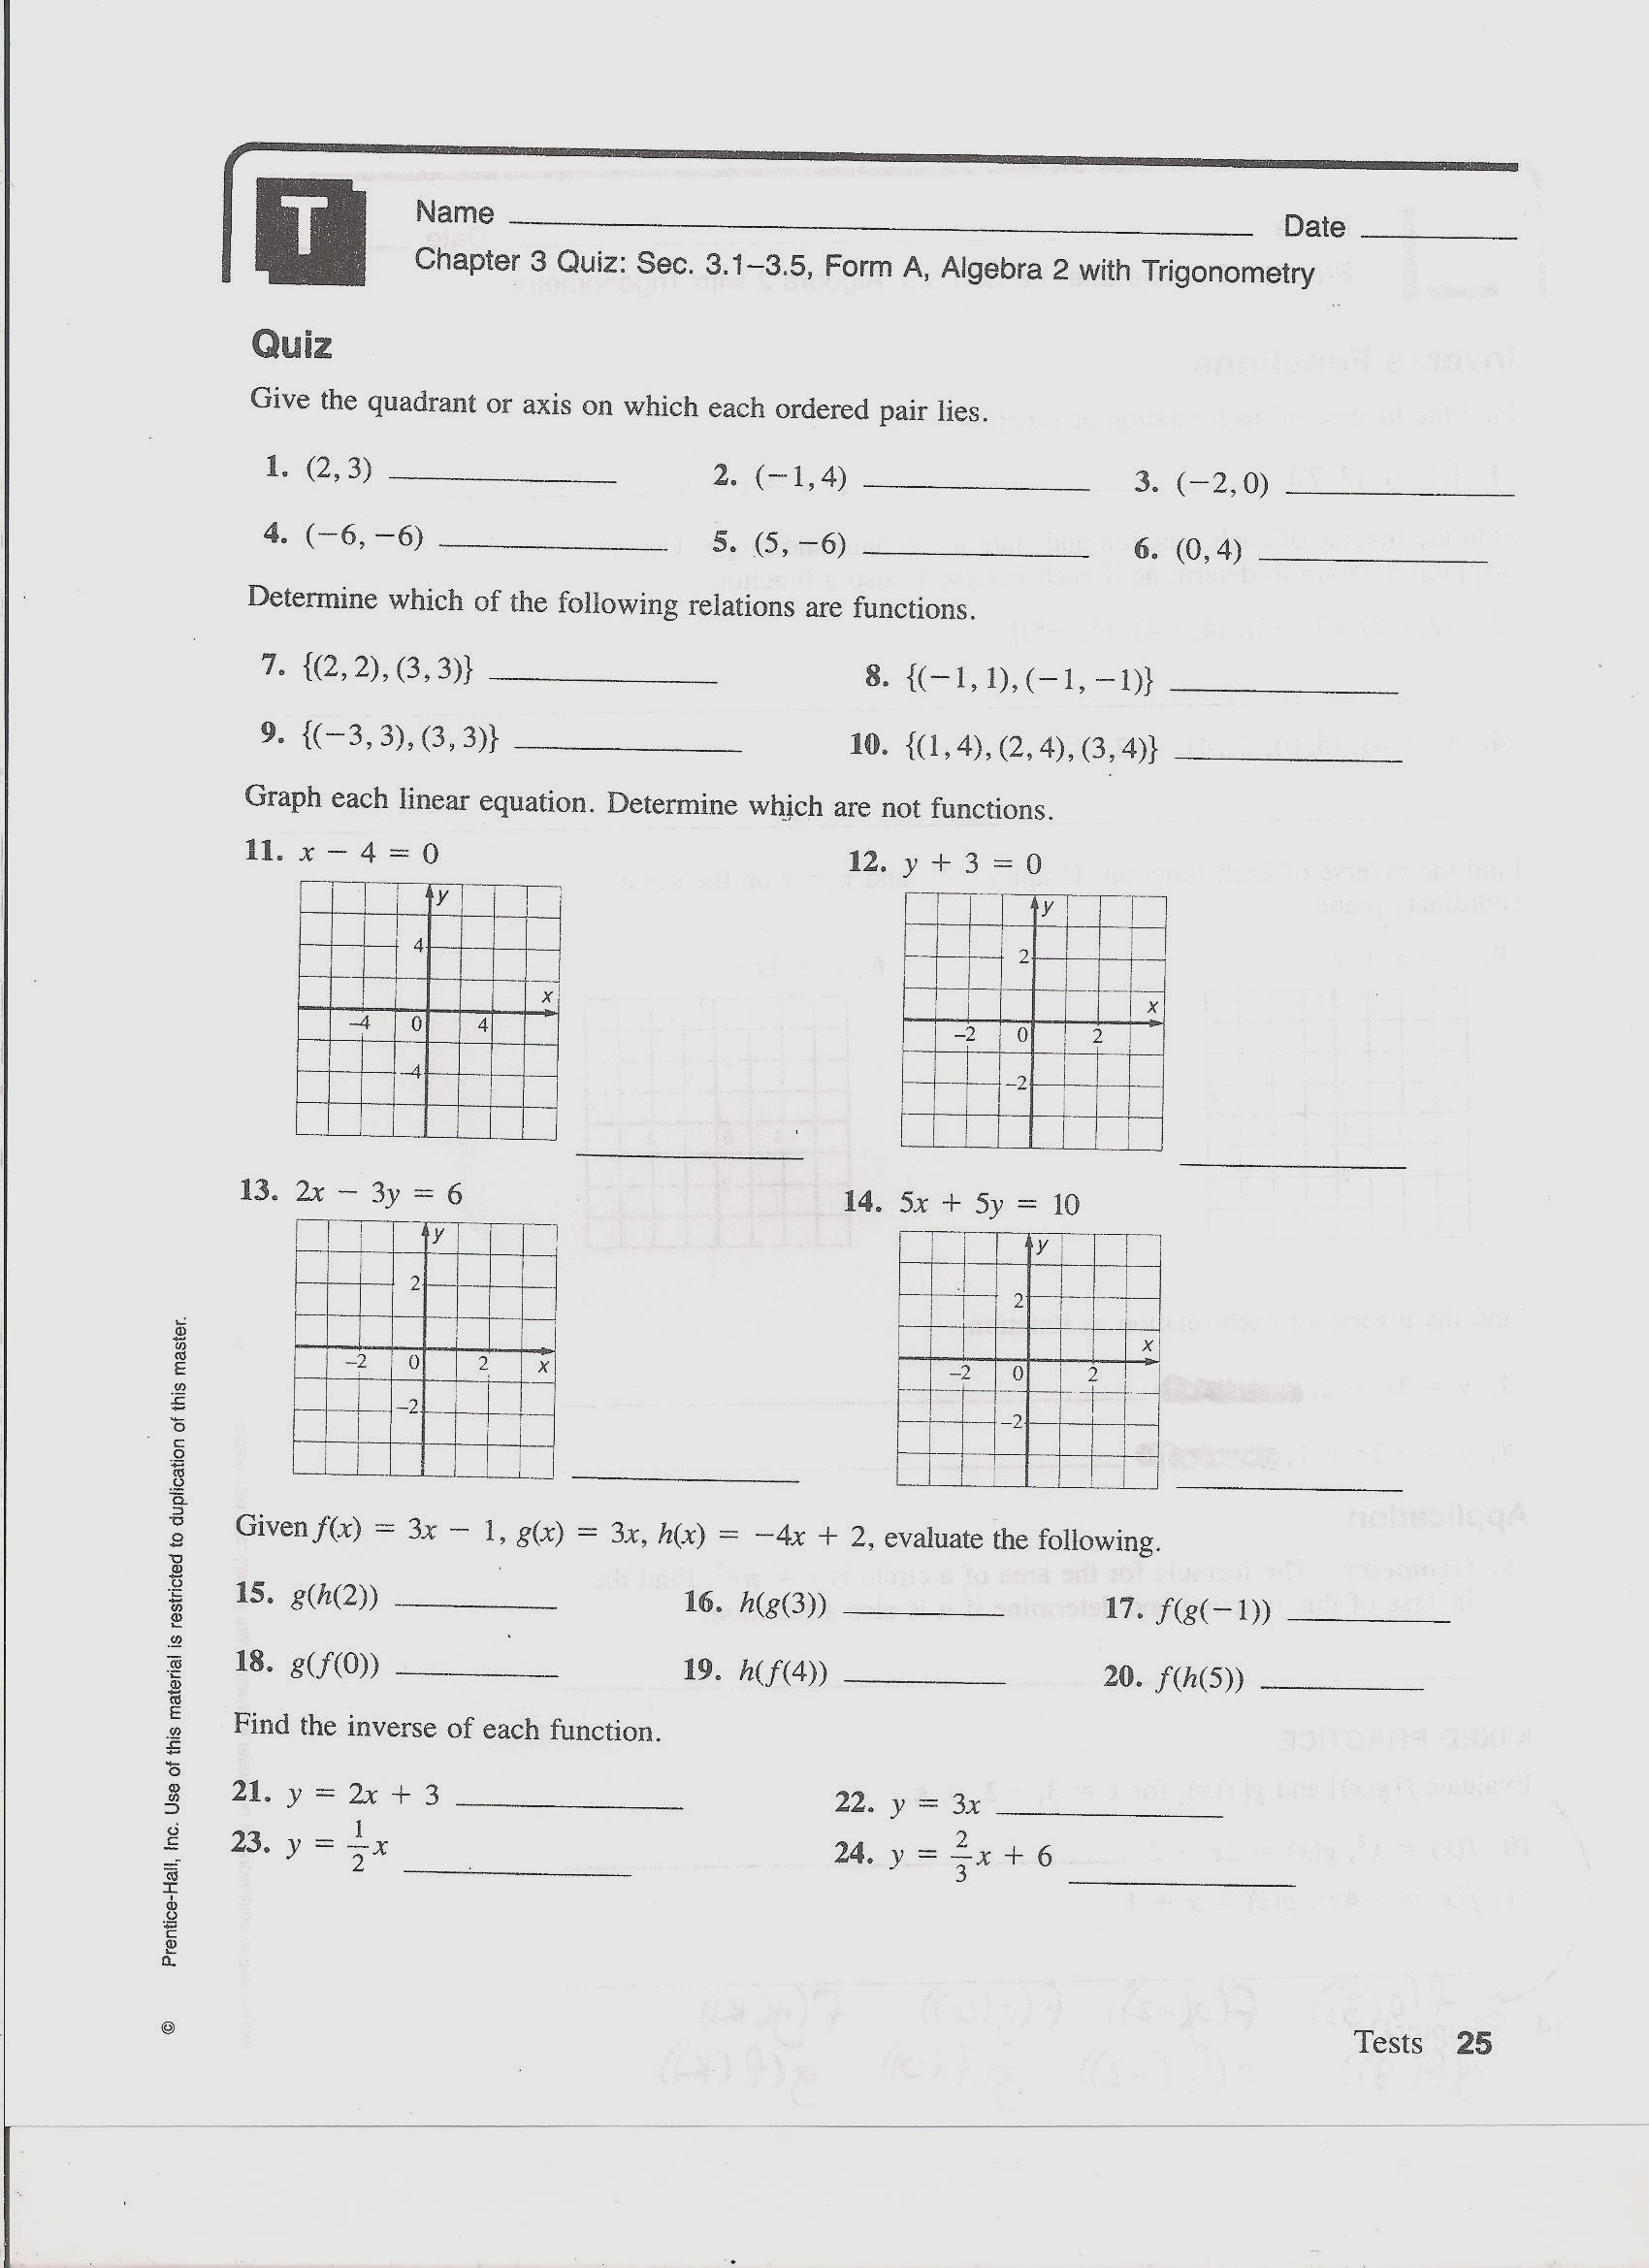 Evaluating Functions Worksheet Algebra 1 1 Math Grade Algebra Worksheets 8th